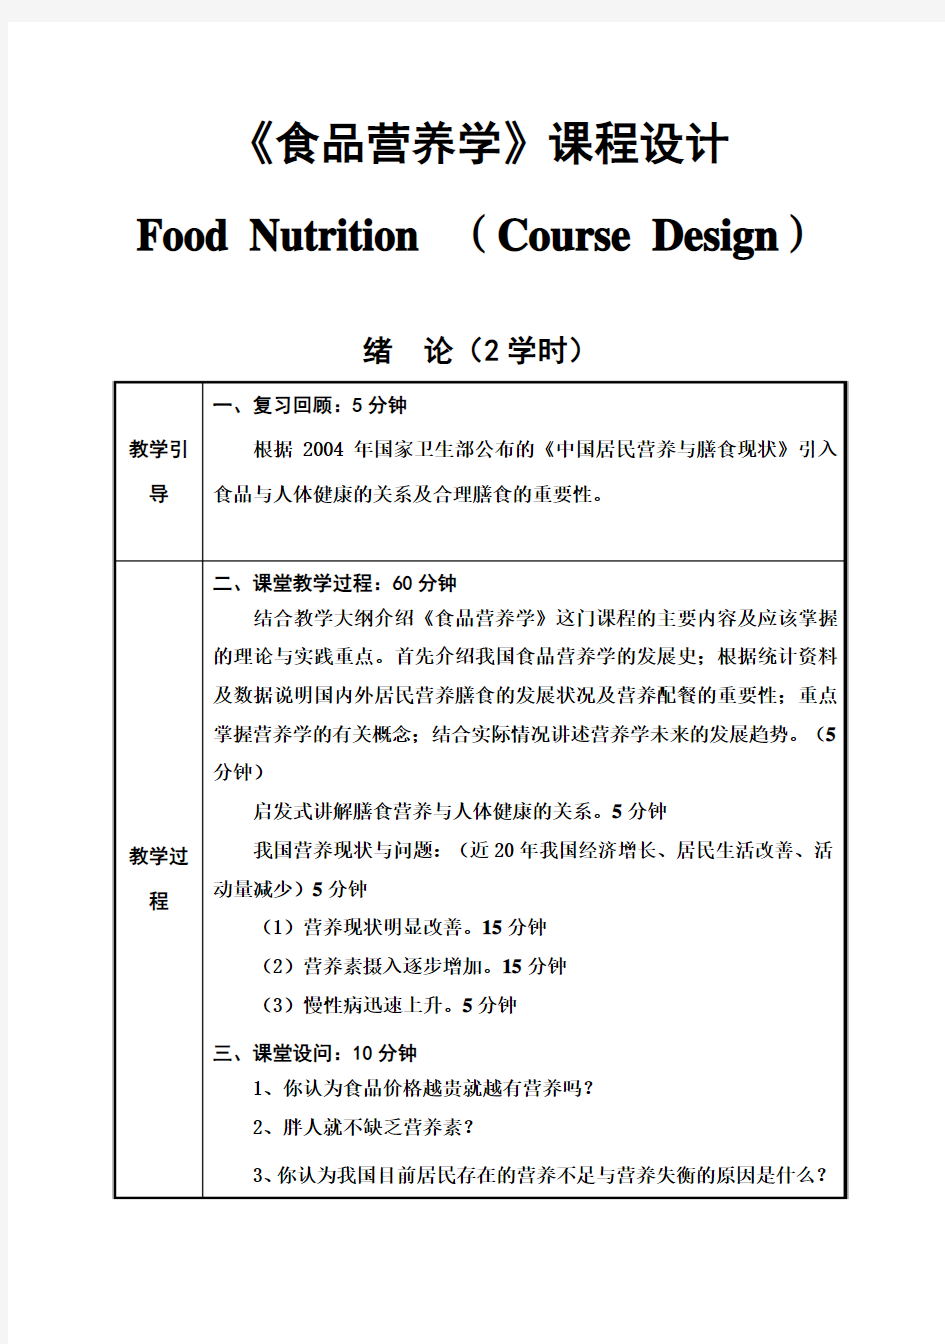 (完整版)食品营养学毕业课程设计